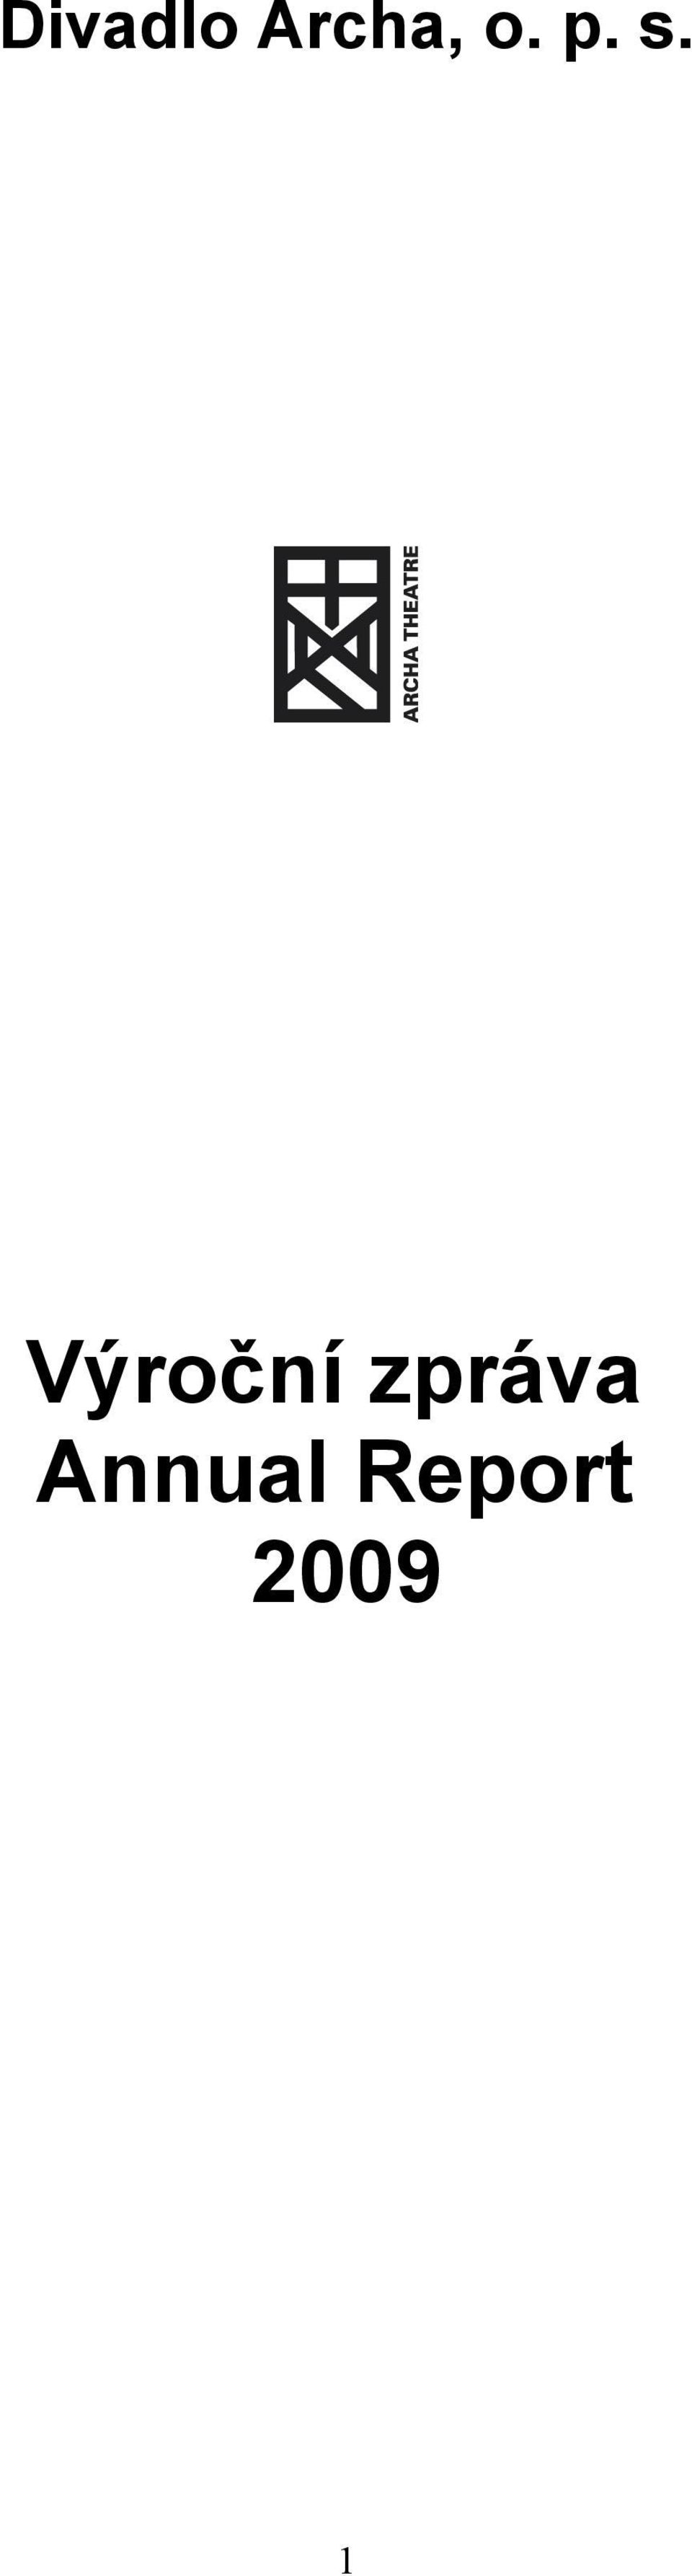 Výroční zpráva